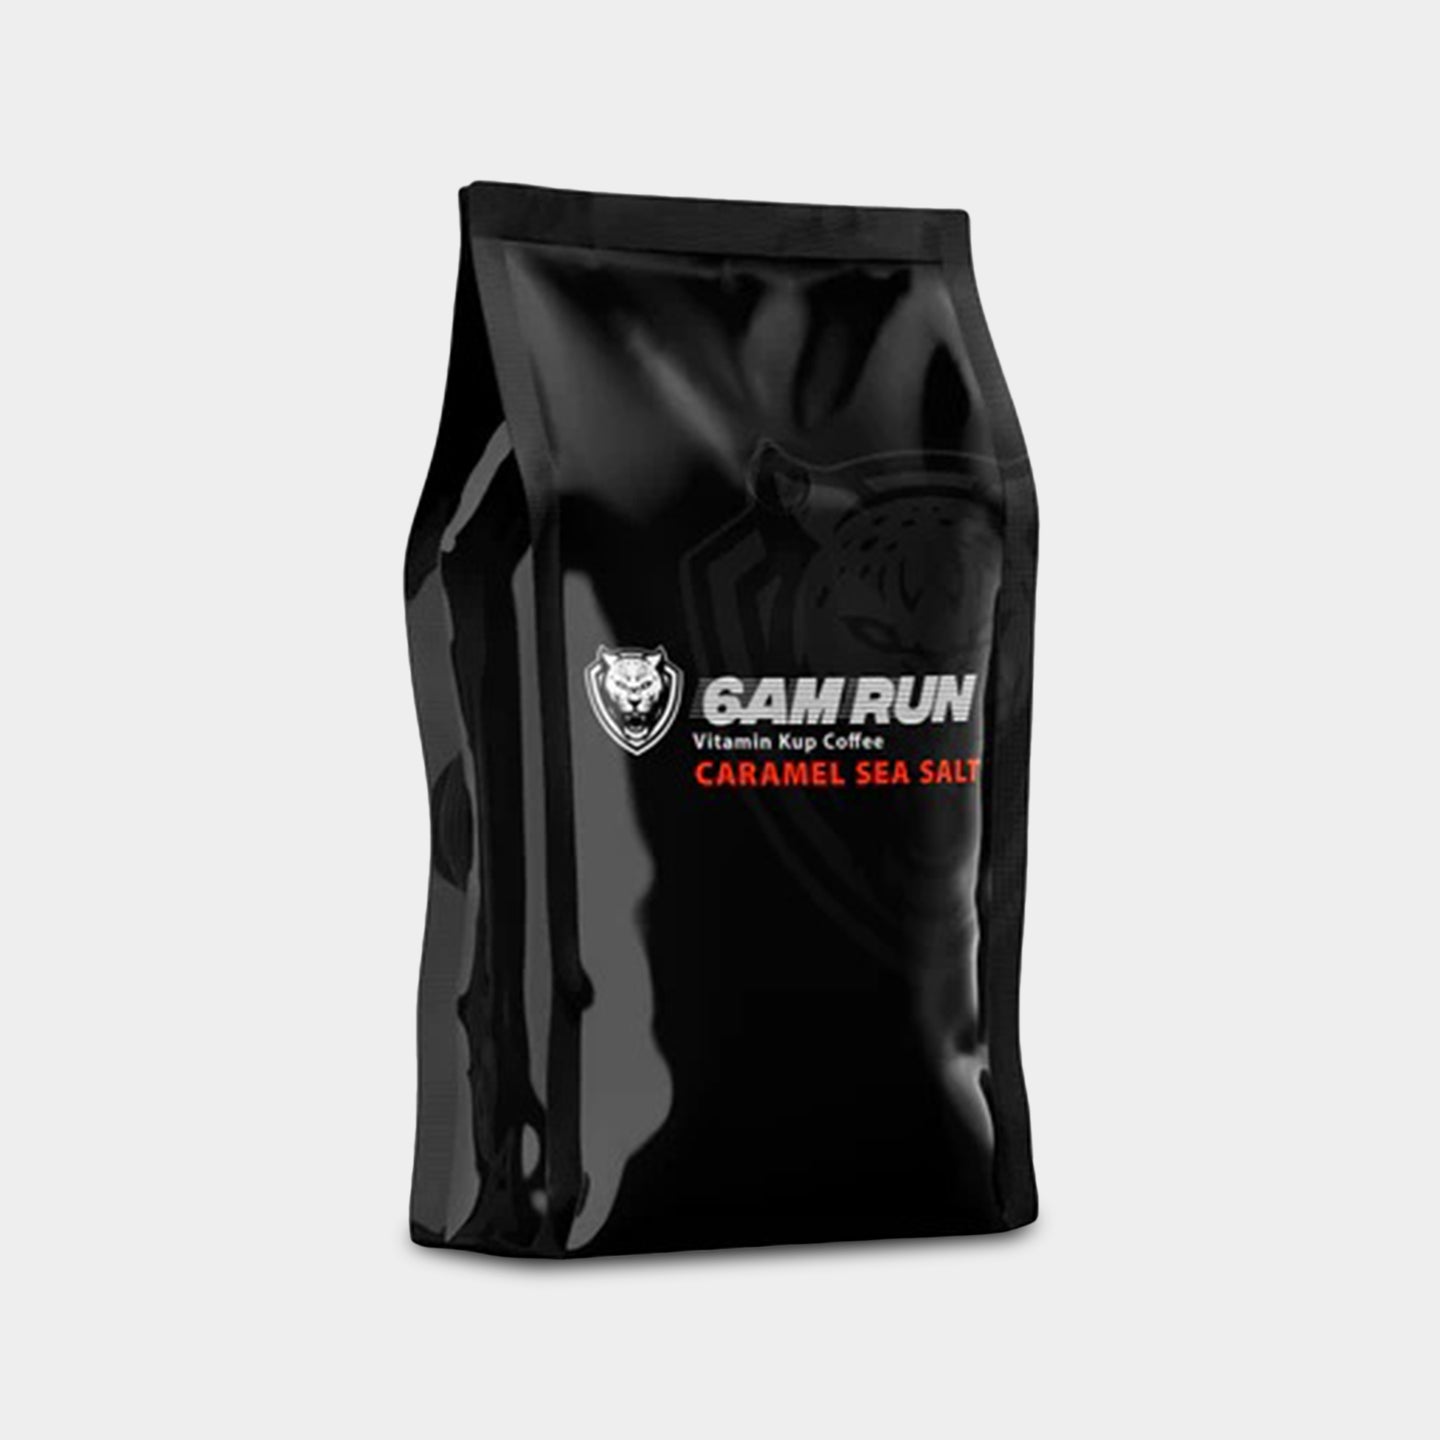 6AM Run Vitamin Coffee Main